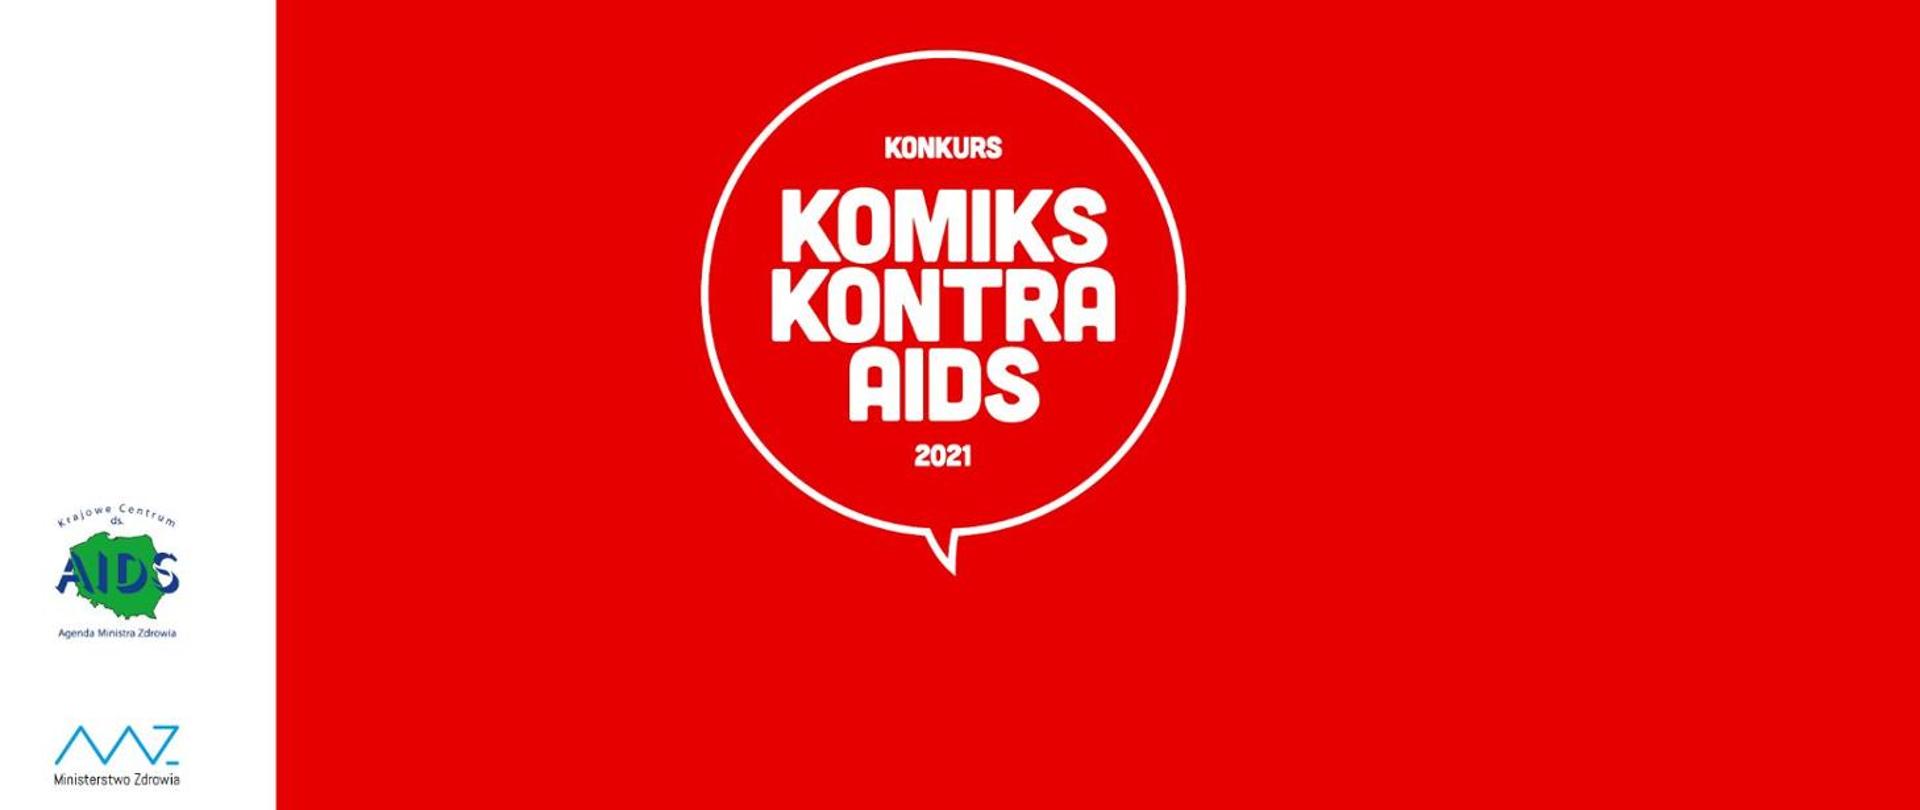 Czerwone tło, w środku napis konkurs KOMIKS KONTRA AIDS 2021